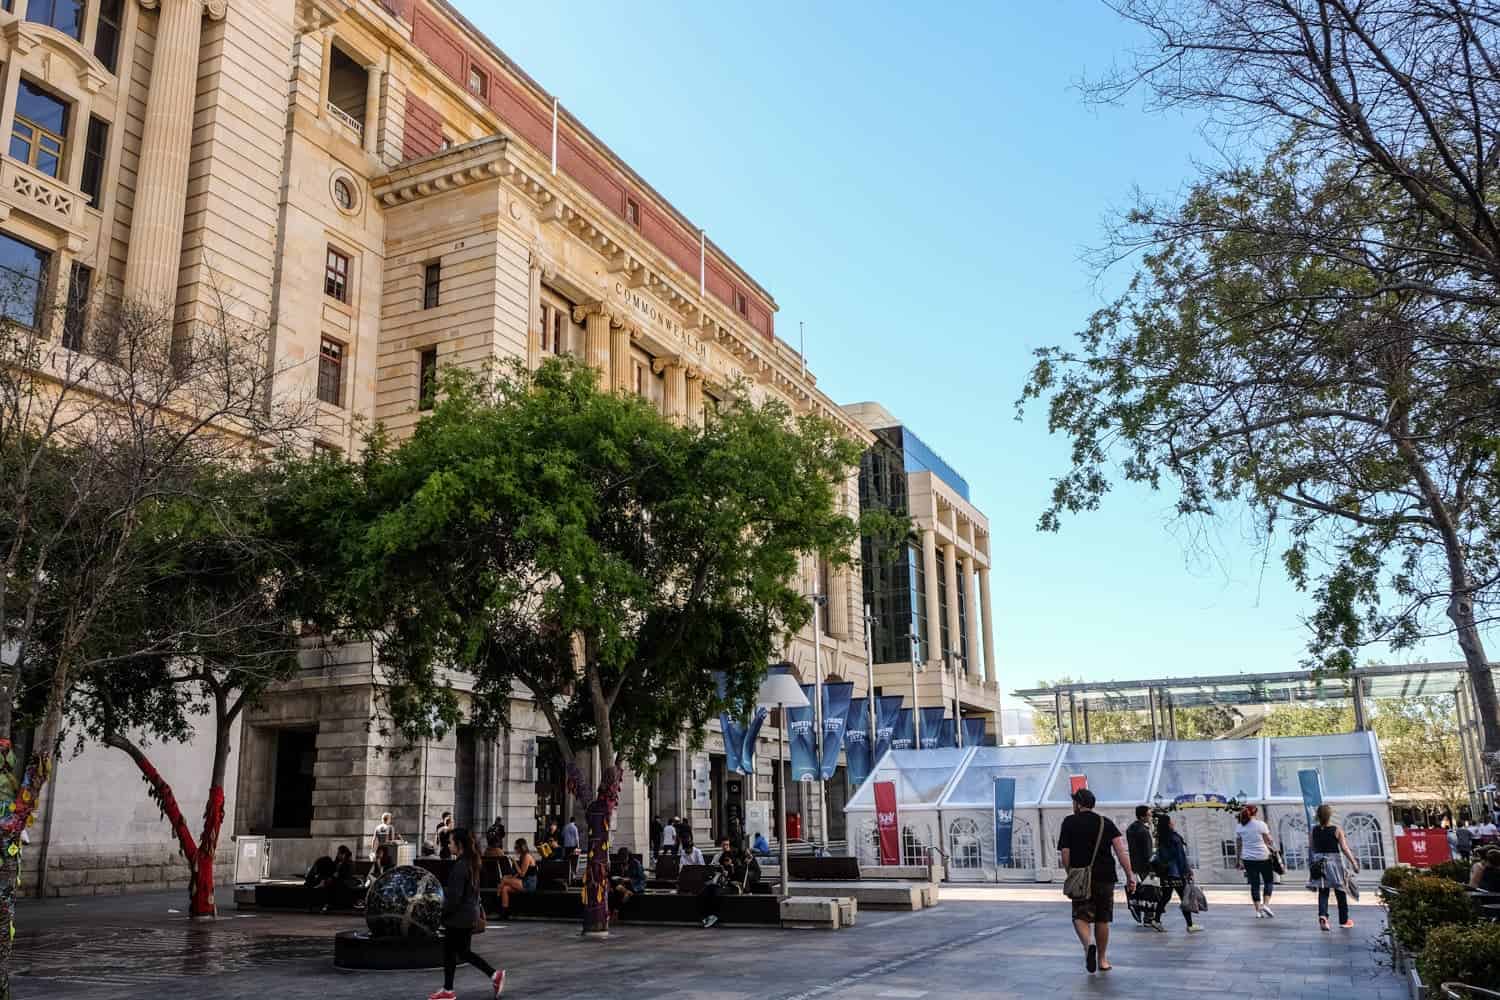 La estructura rectangular de color beige es uno de los edificios estatales de Perth, donde operan nuevos negocios en antiguas propiedades del gobierno.